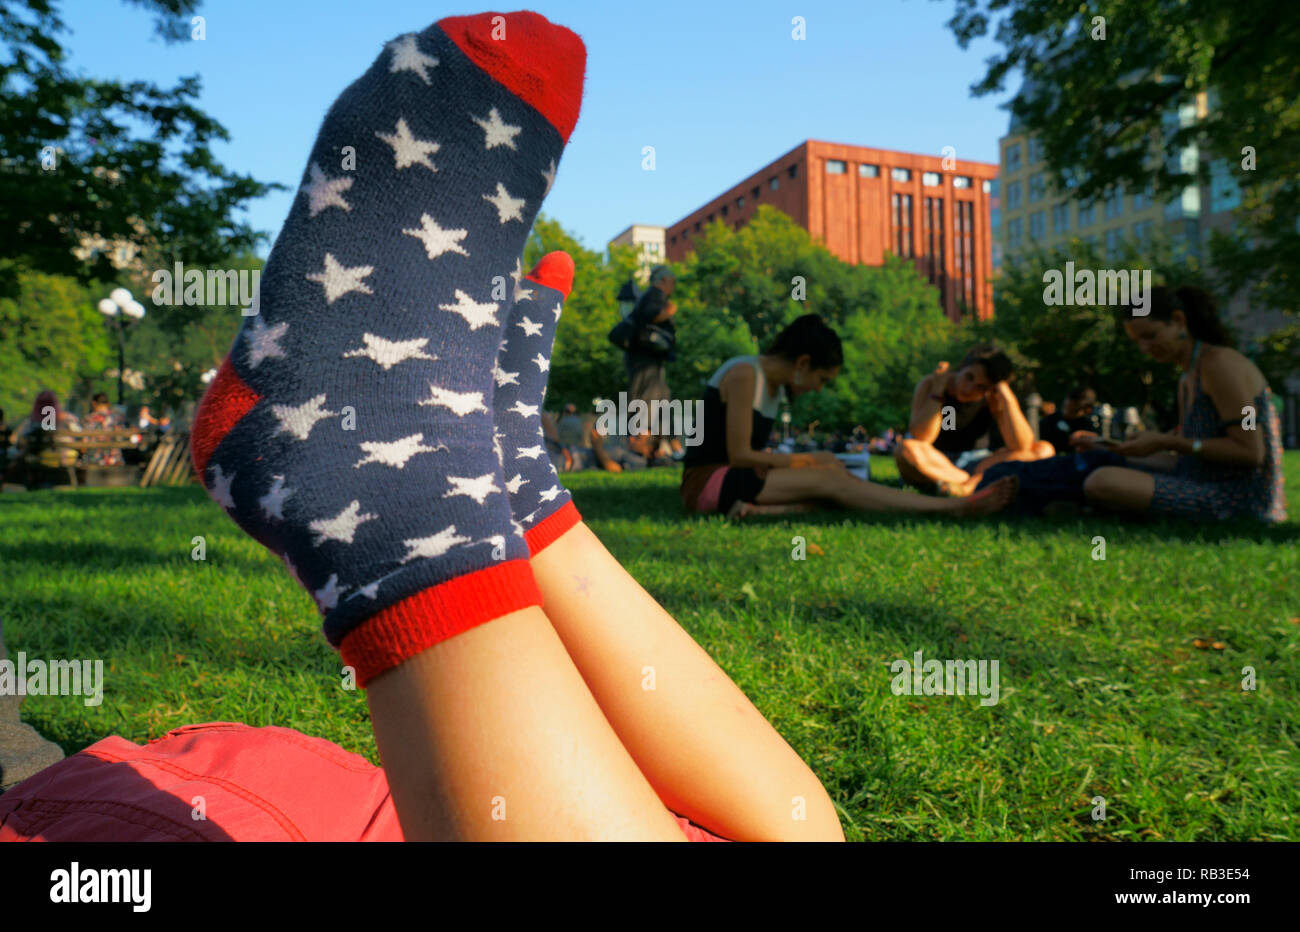 Chaussettes pour enfant à étoiles blanches avec des couleurs bleu et rouge du drapeau américain comme une couleur et motif. Washington Square Park.New York city.NY.USA Banque D'Images